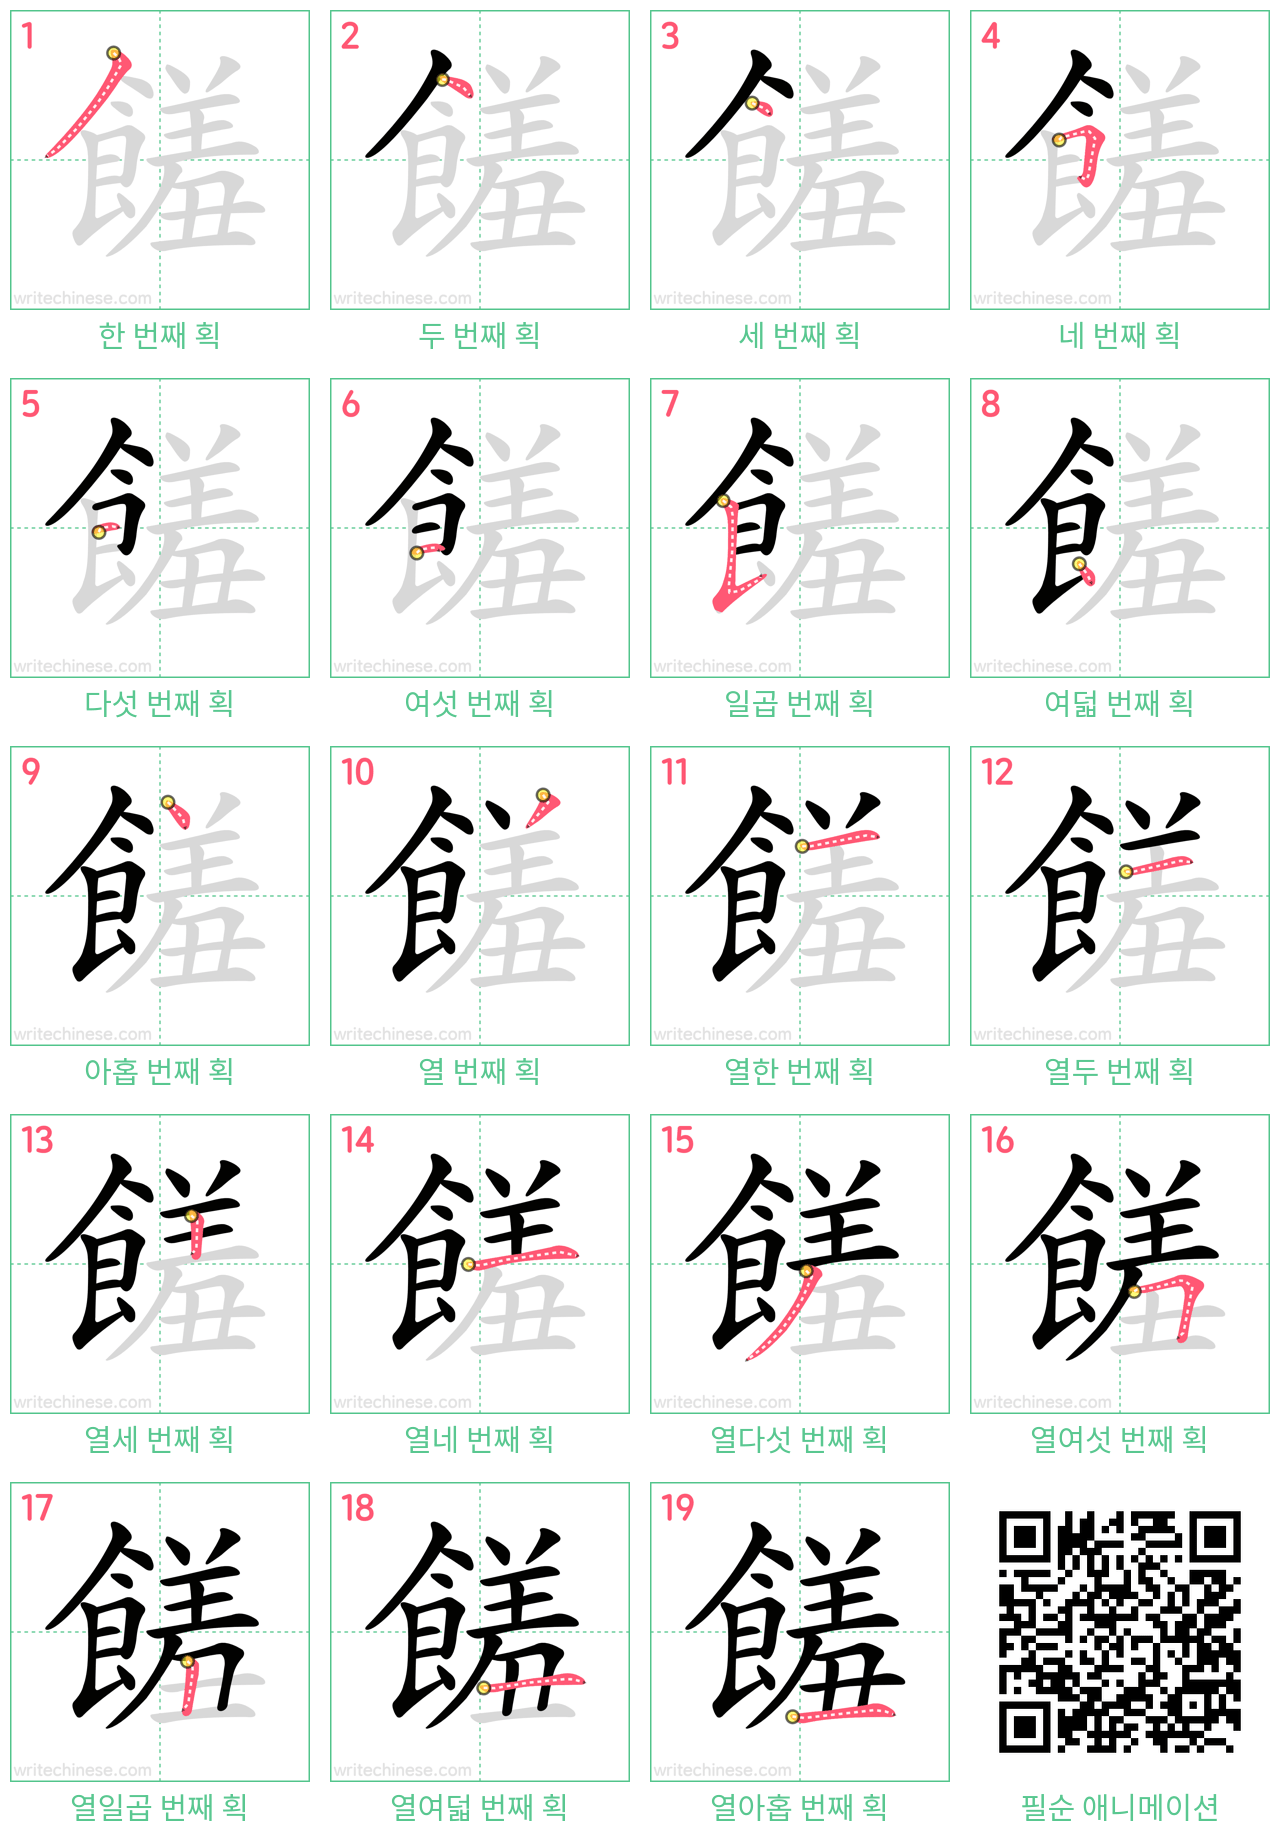 饈 step-by-step stroke order diagrams